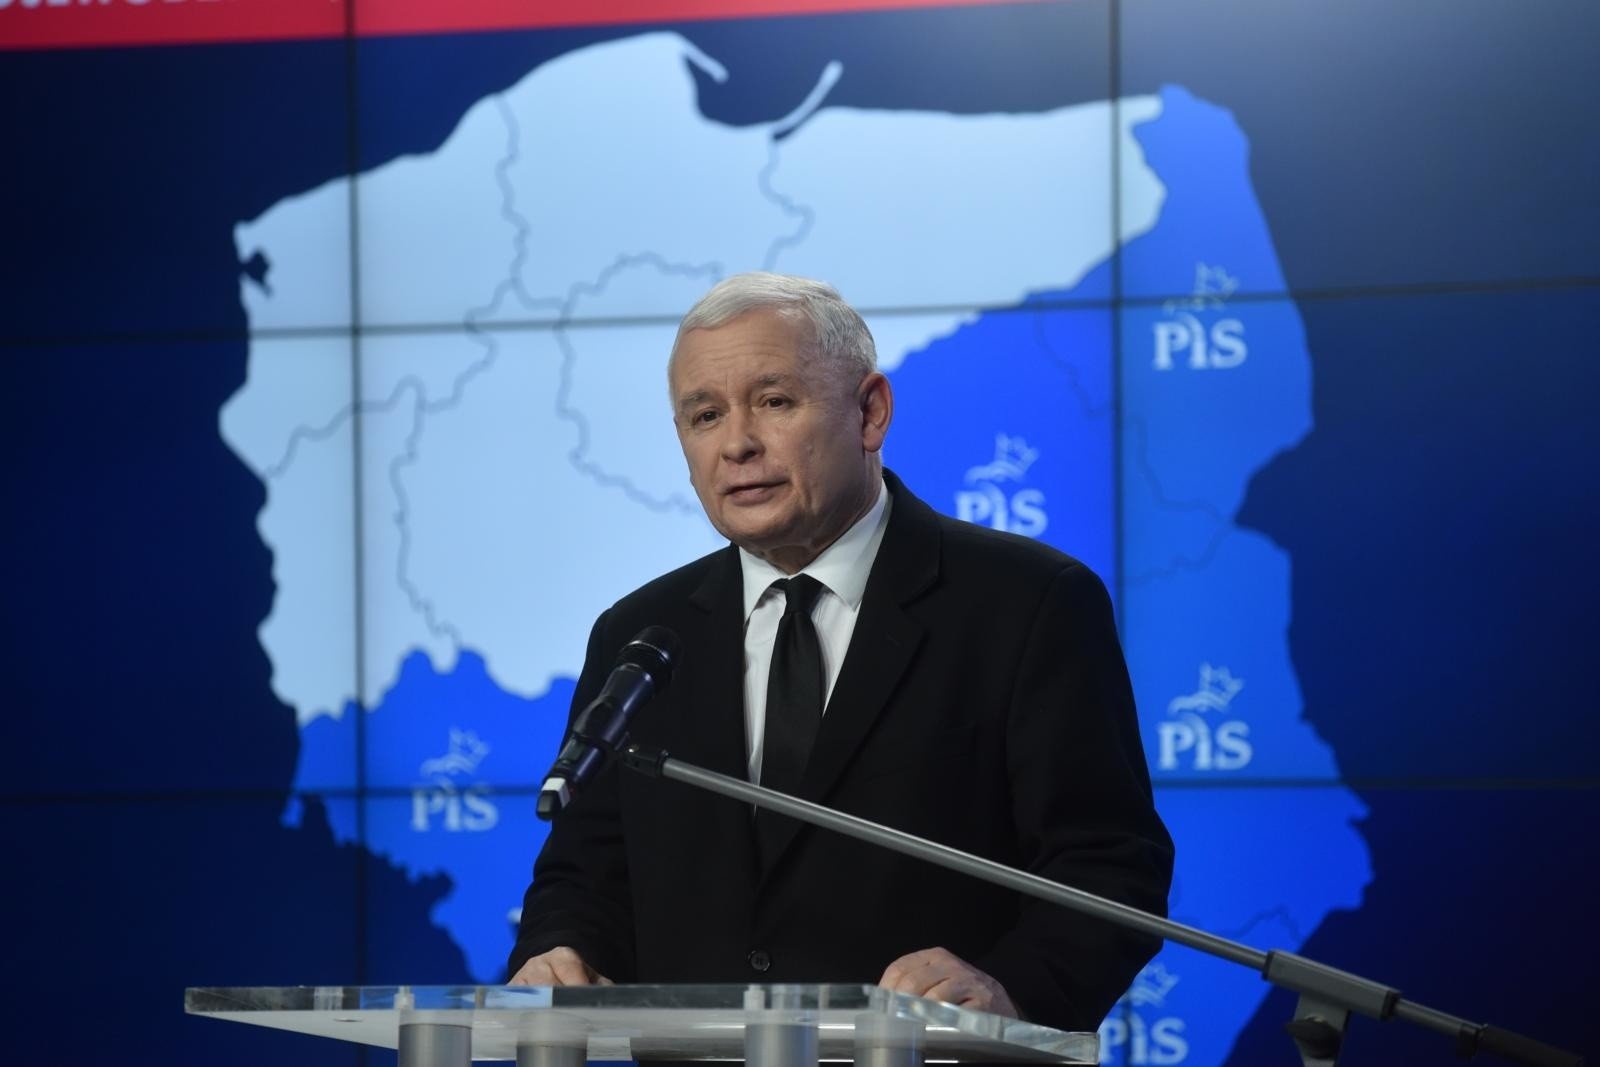 Prezes PiS Jarosław Kaczyński w Polskim Radiu: Ani Trzaskowski ani Sikorski  nie nadają się na stanowisko prezydenta Polski | Polska Times